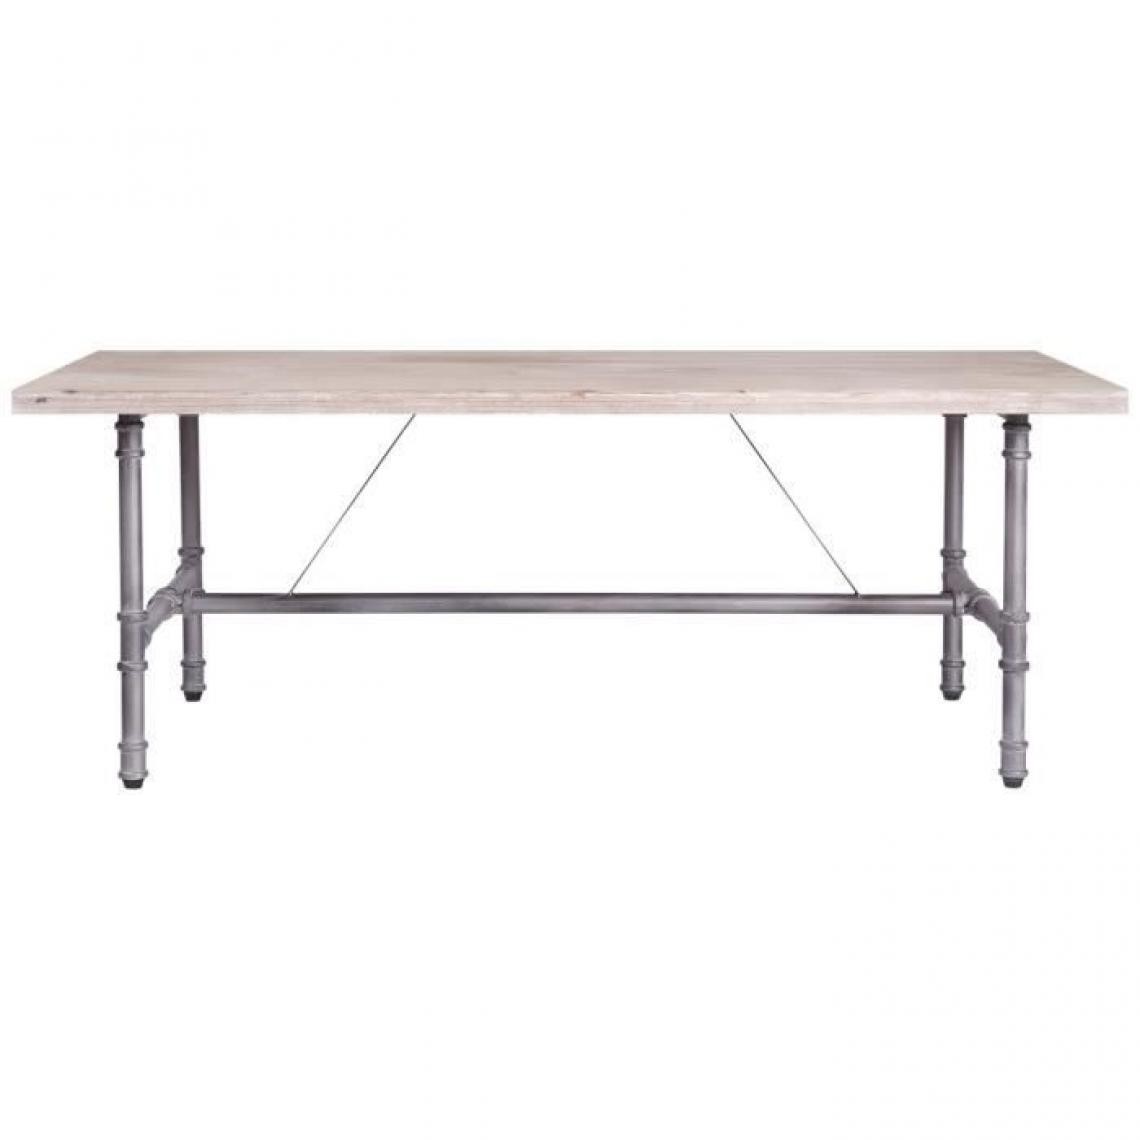 Cstore - Table basse rectangulaire - Bois et tube industriel patiné - 120 x 80 x 45 cm - TULO - Tables basses